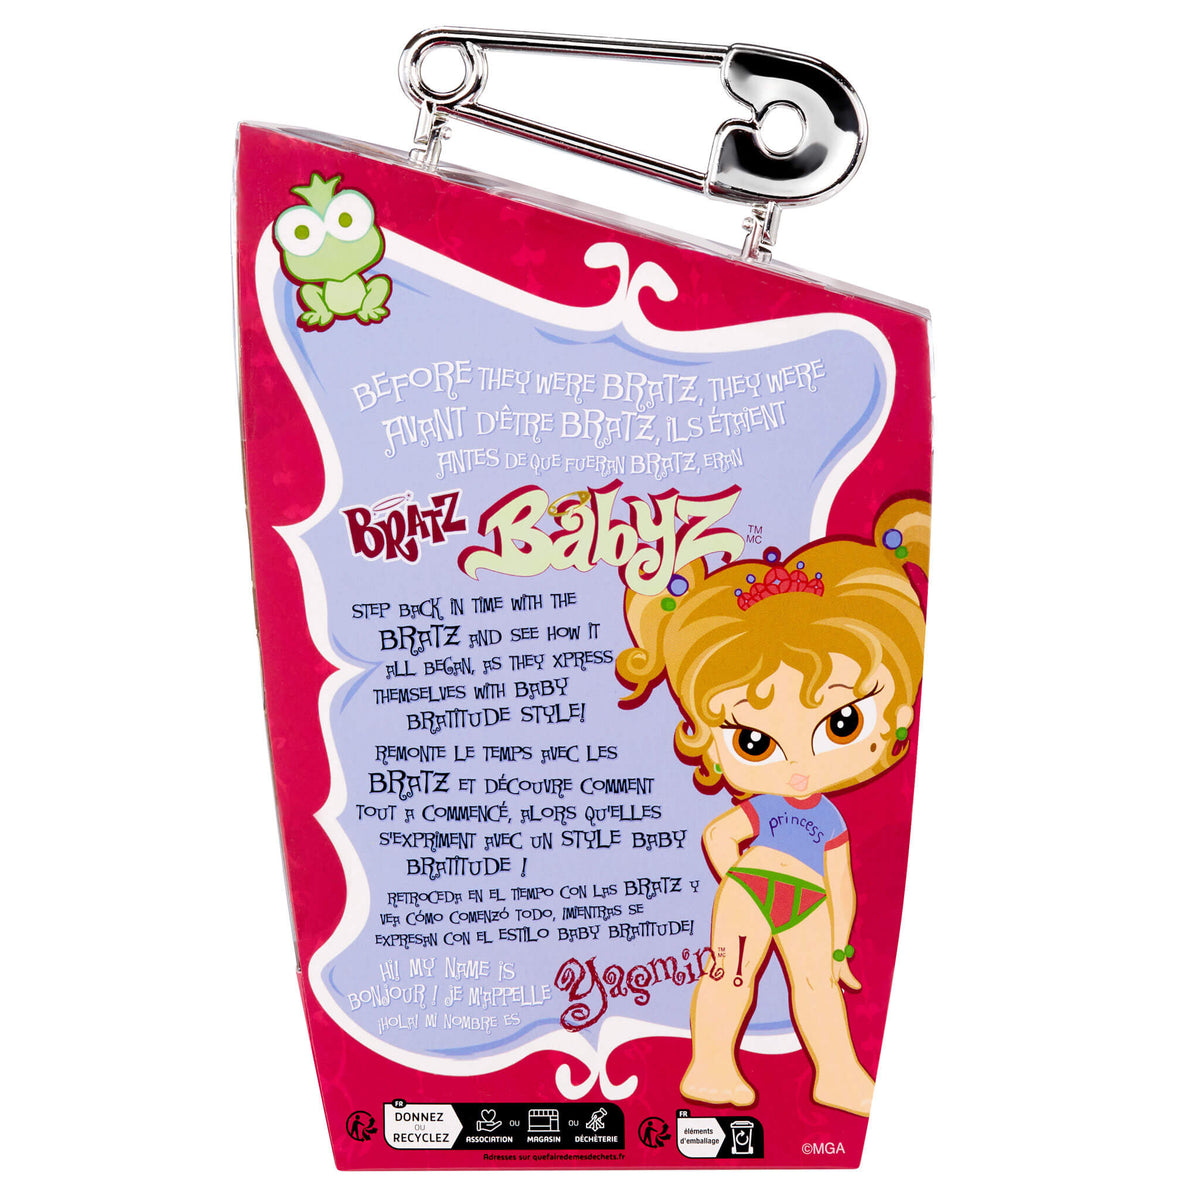 Itsy Bitsy Holiday Yasmin Doll Little Bratz Babyz 2.5' authentic MGA Bratz  Bobblehead Doll Mint 